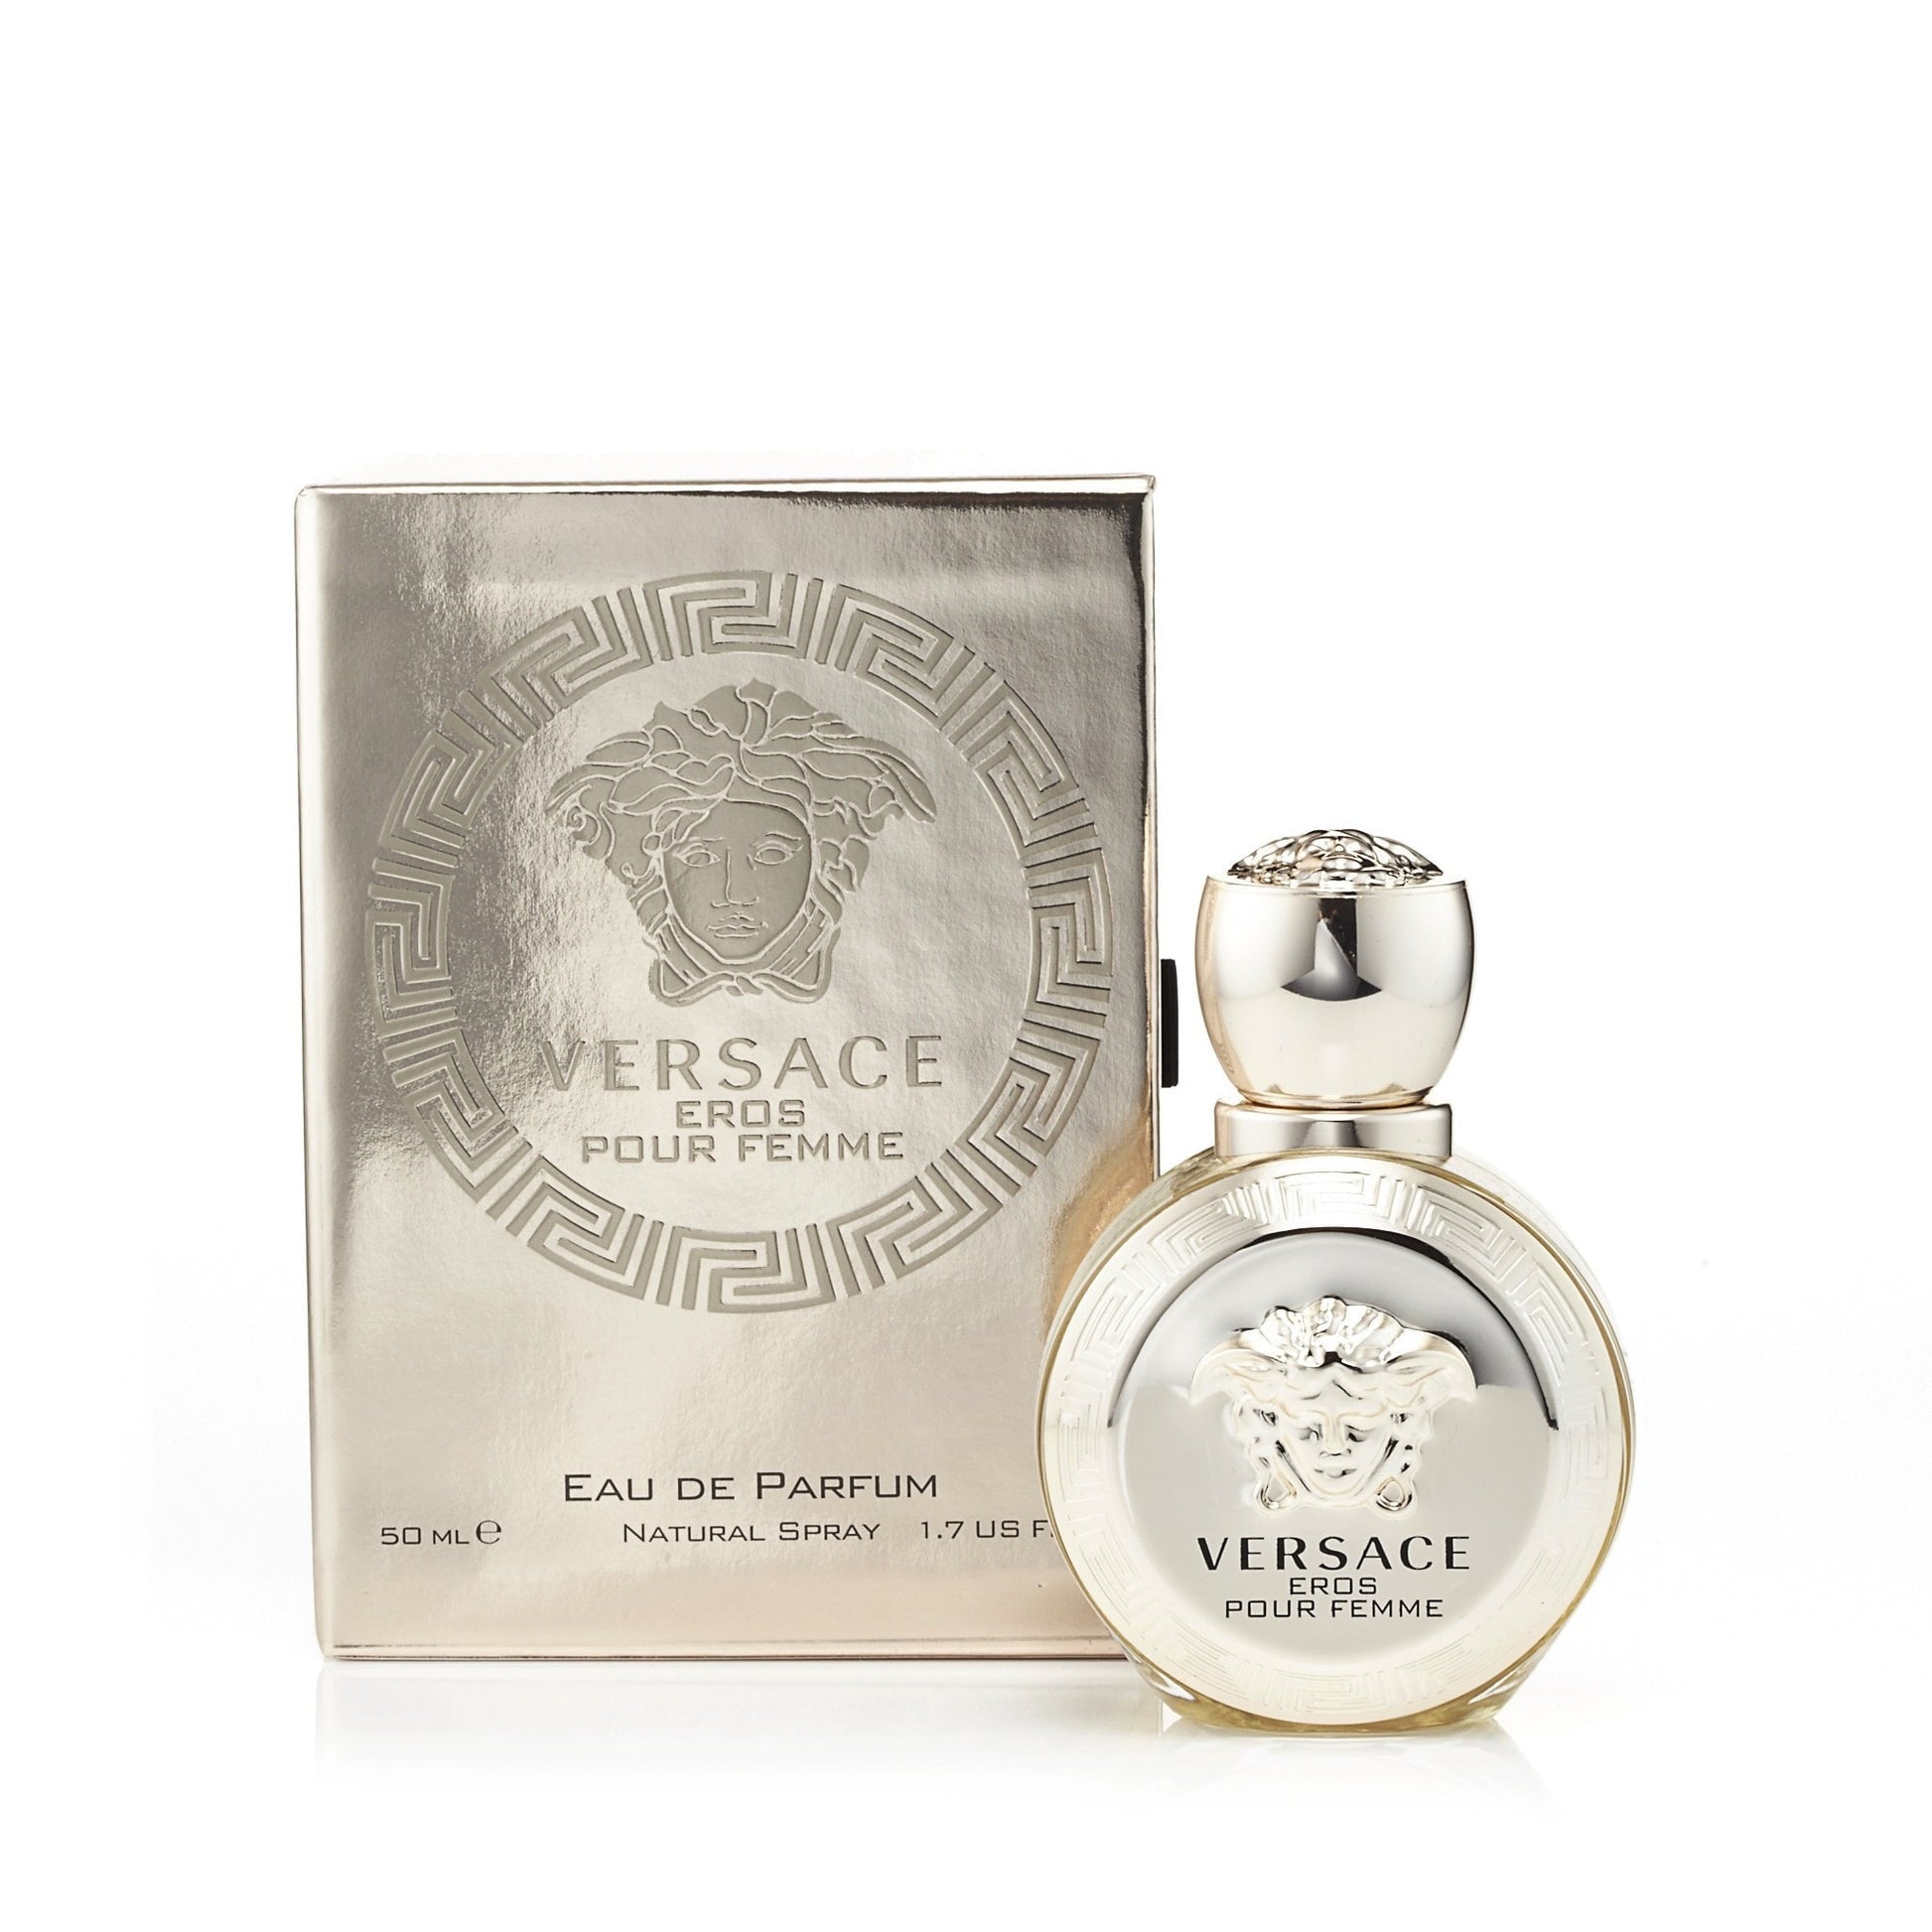 Versace Eros Eau de Parfum Womens Spray 1.7 oz.  Click to open in modal